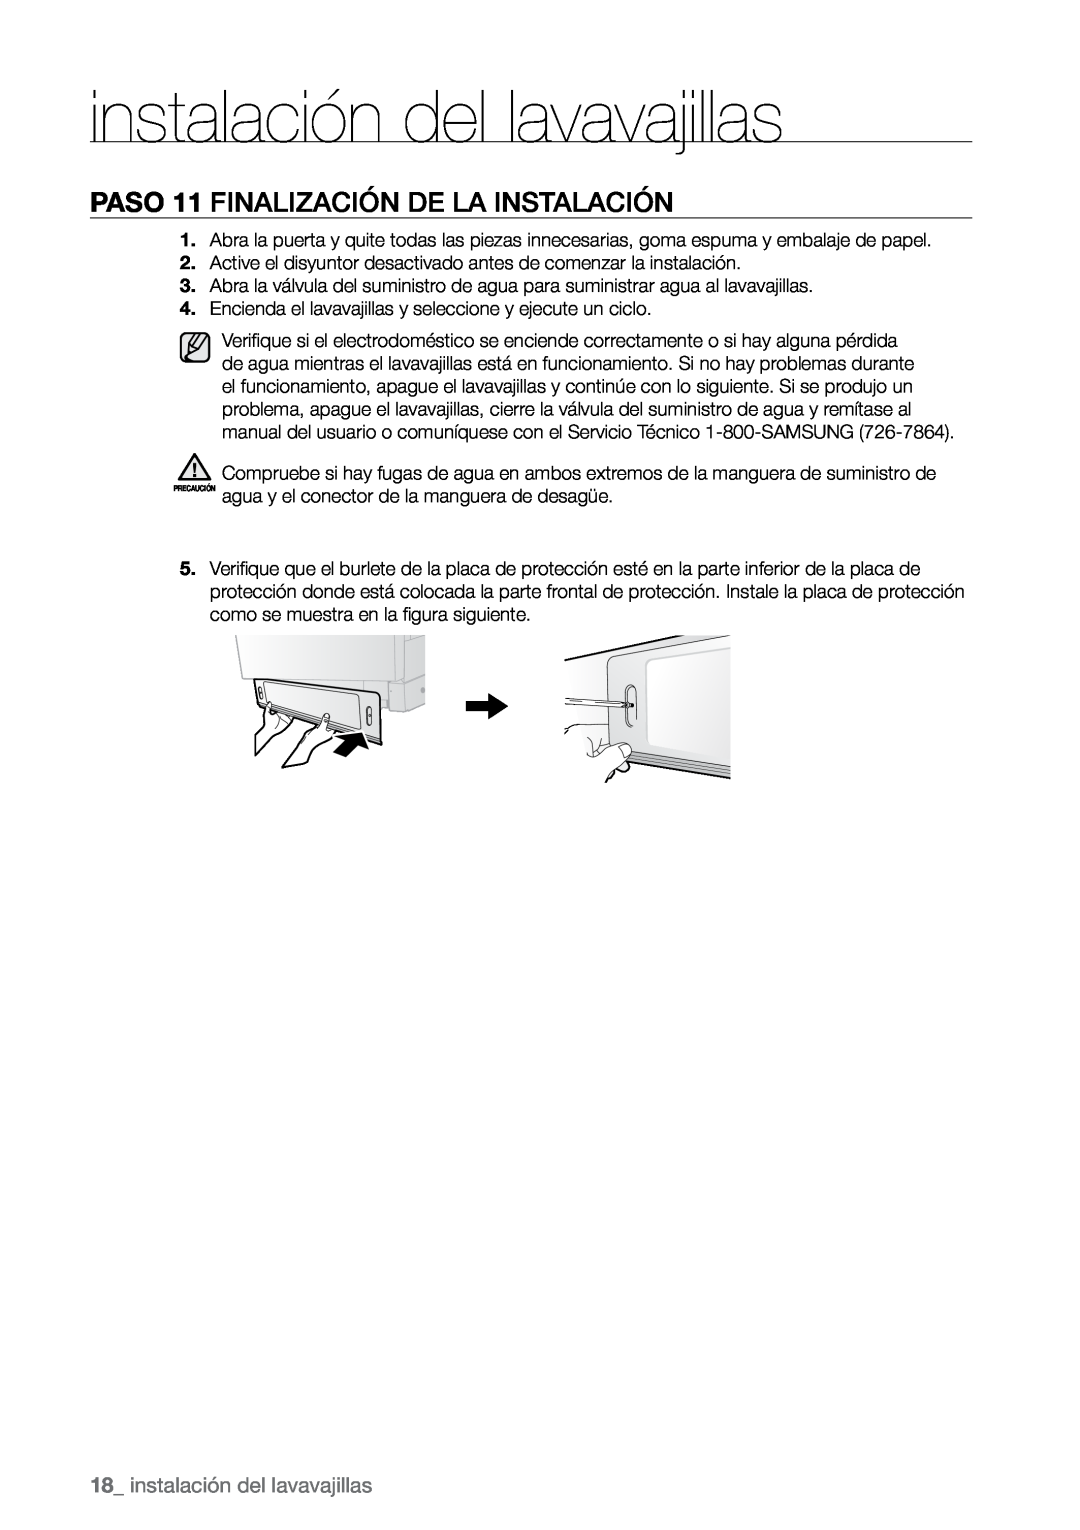 Samsung DMR78, DMR57, DMR77 manual PASO 11 Finalización de la instalación, instalación del lavavajillas 